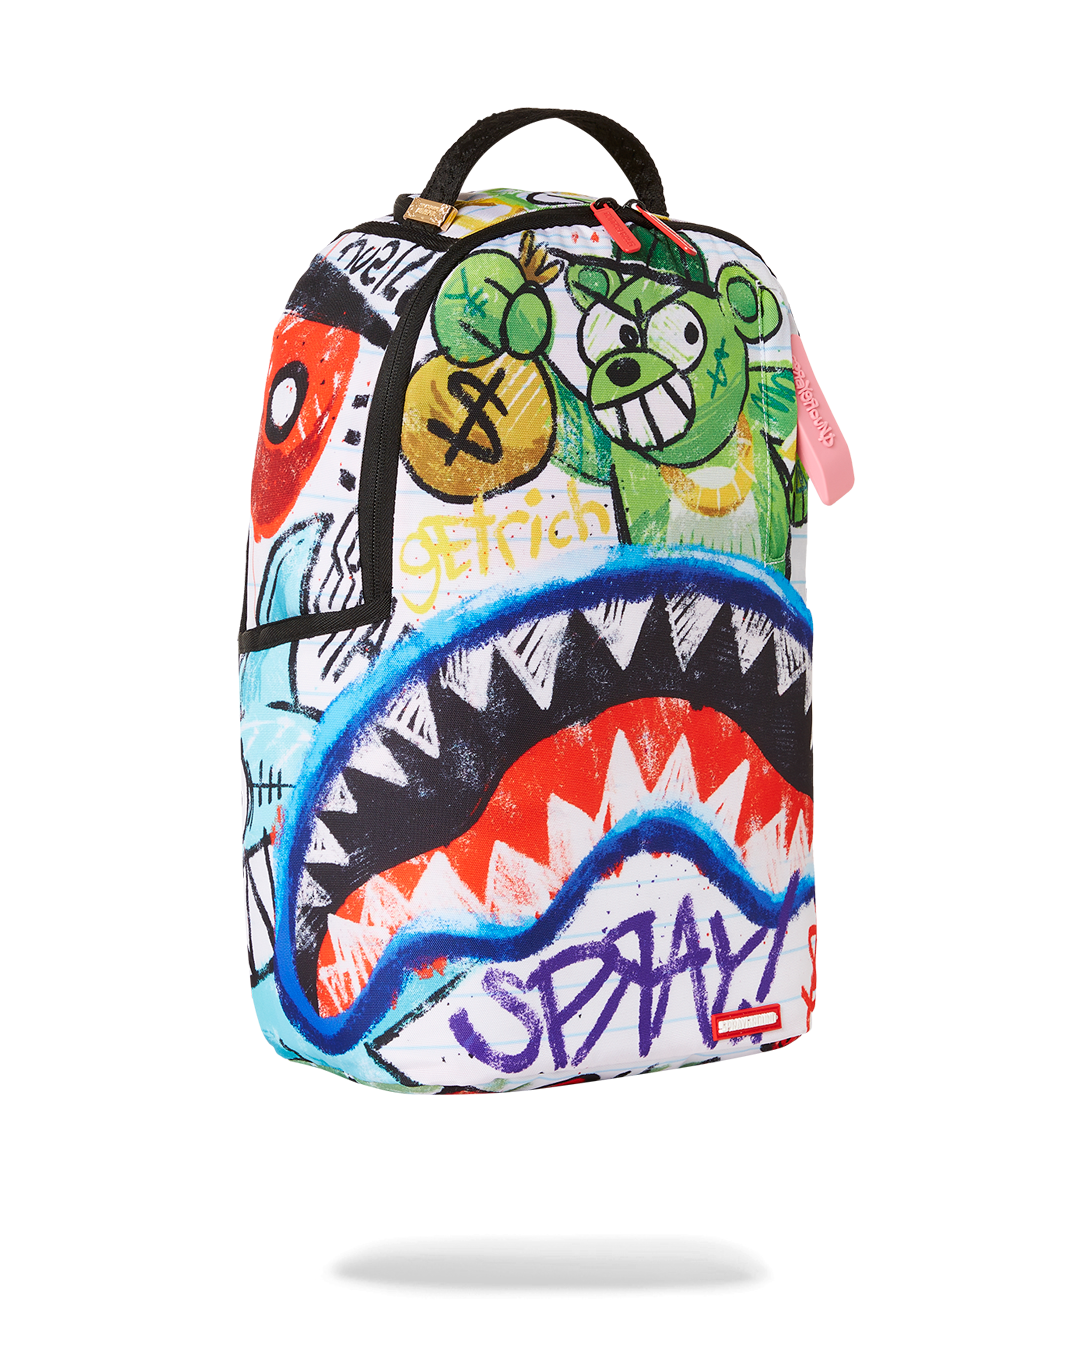 Sprayground Scribble Shark Backpack